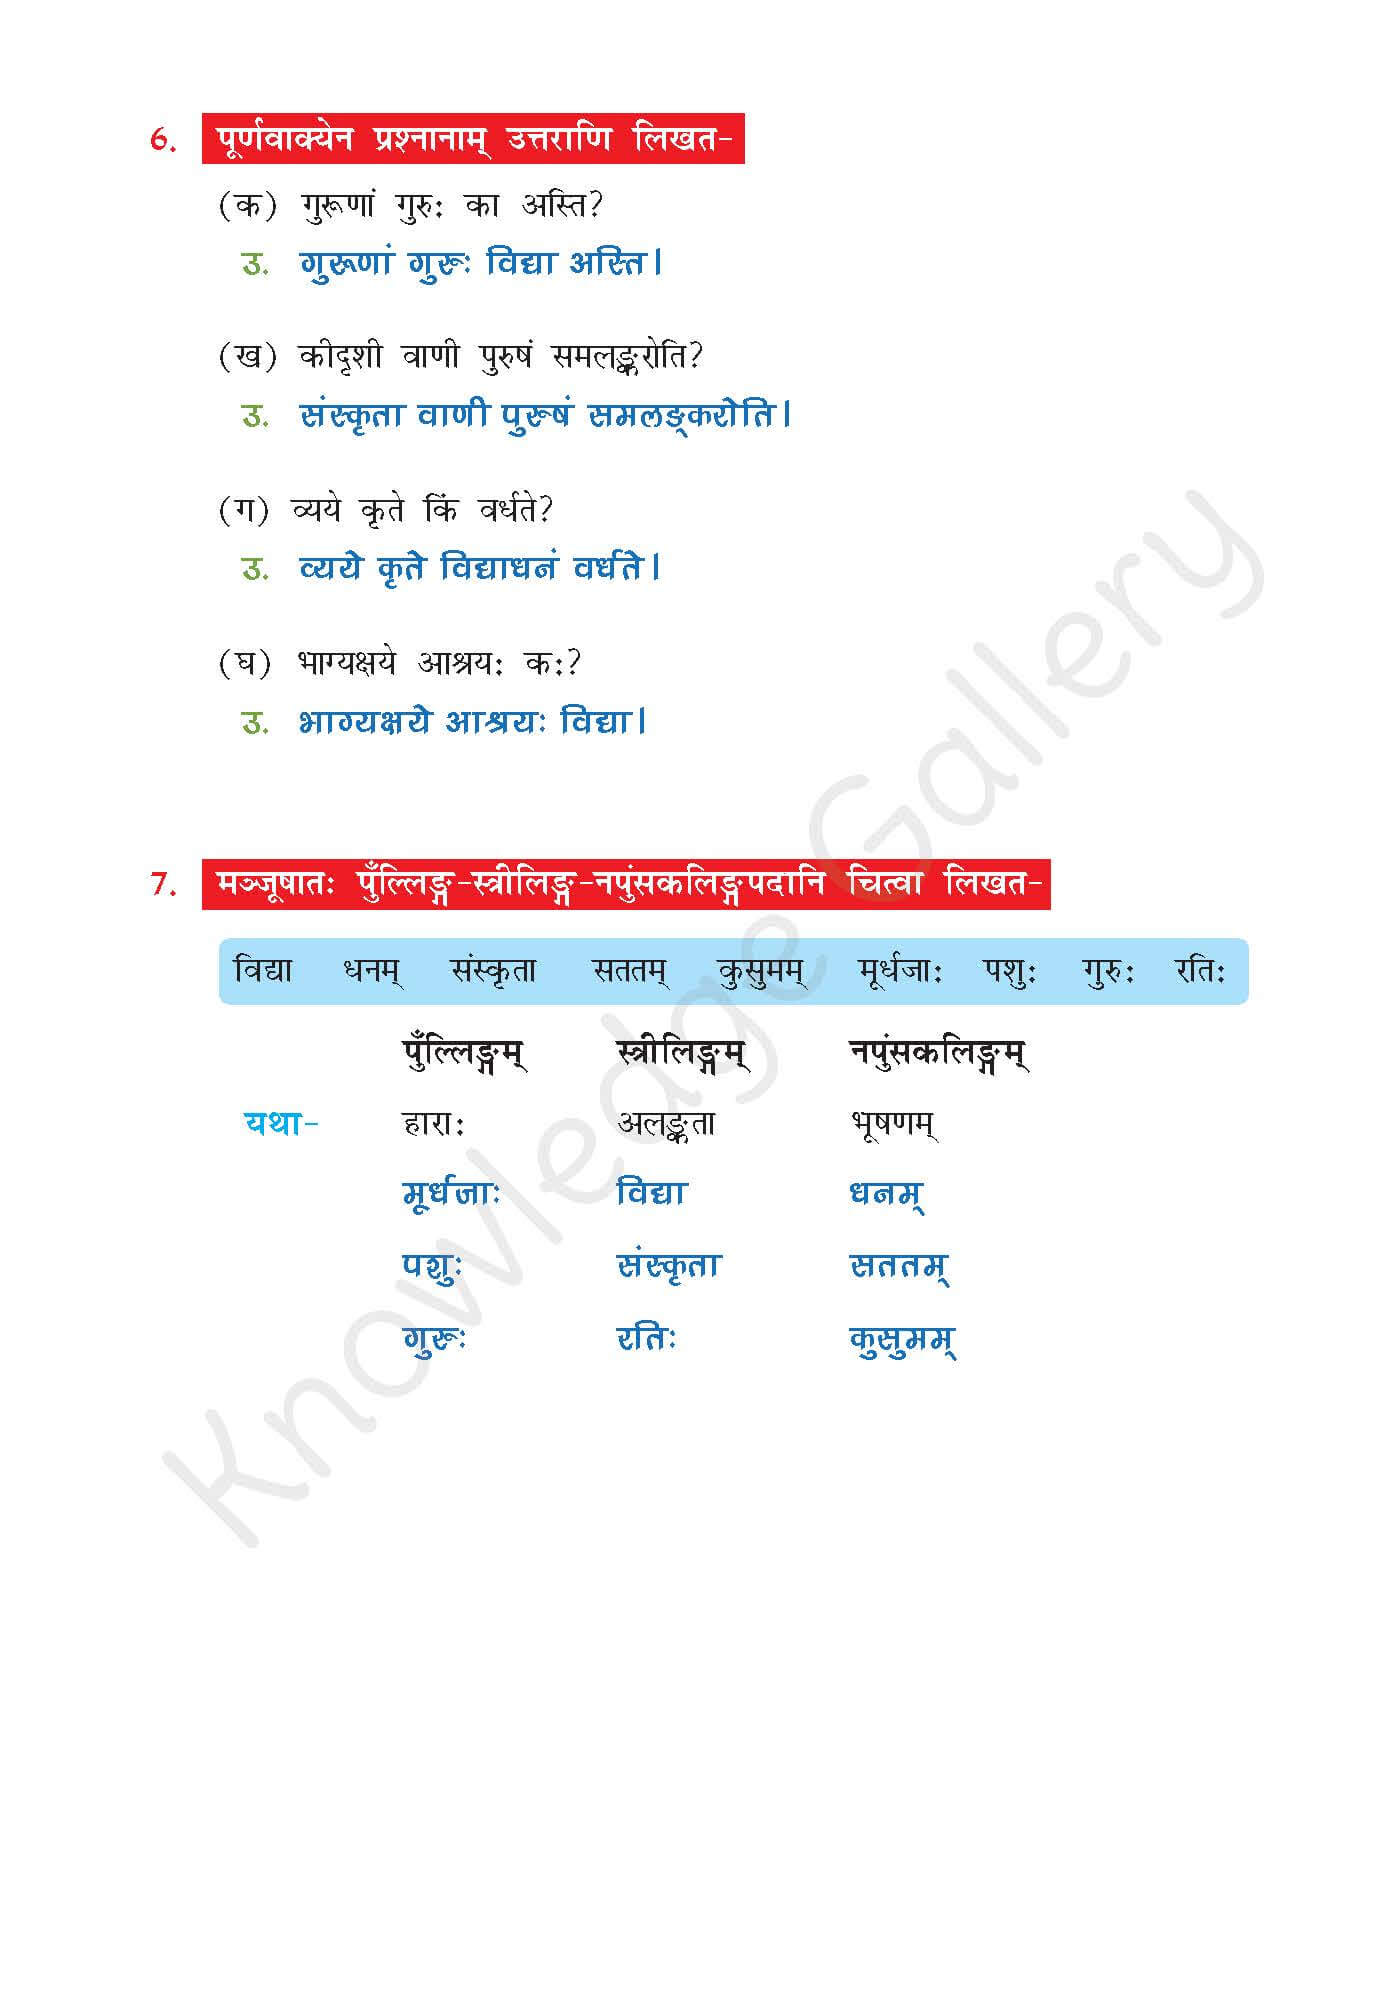 NCERT Solution For Class 7 Sanskrit Chapter 11 part 6